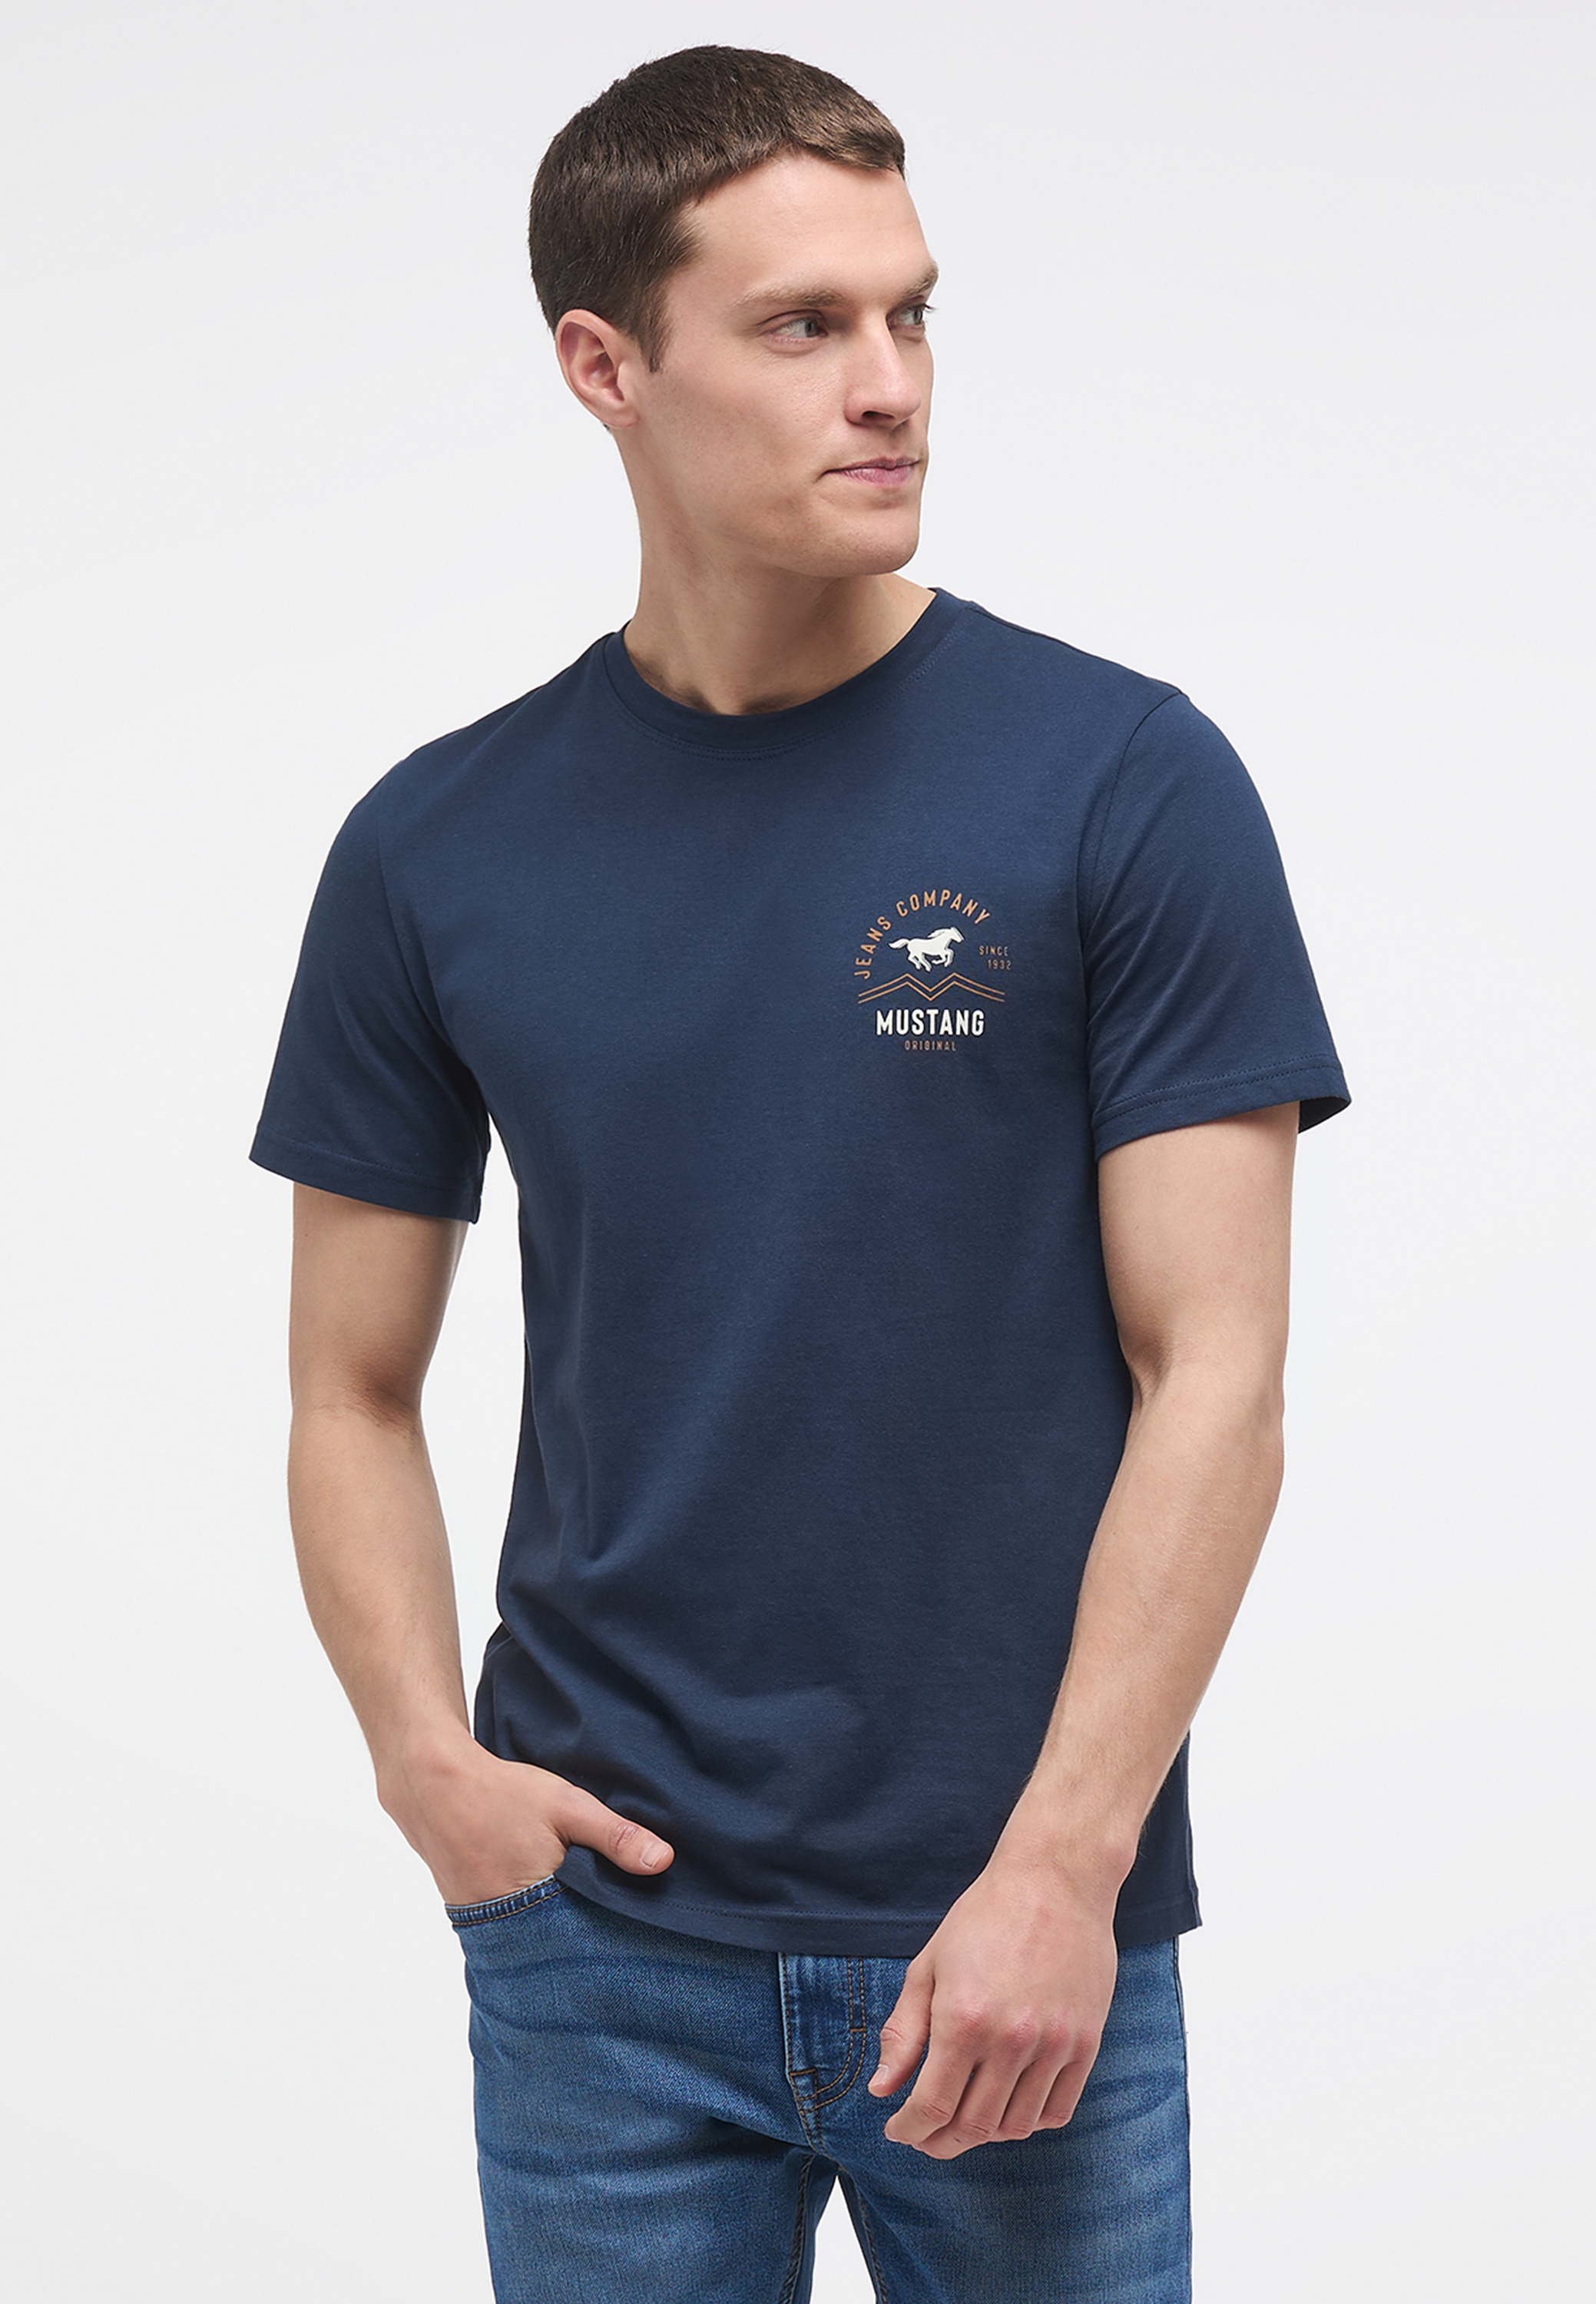 T-Shirt mit Print auf Brusthöhe jetzt bei bei Mustang kaufen